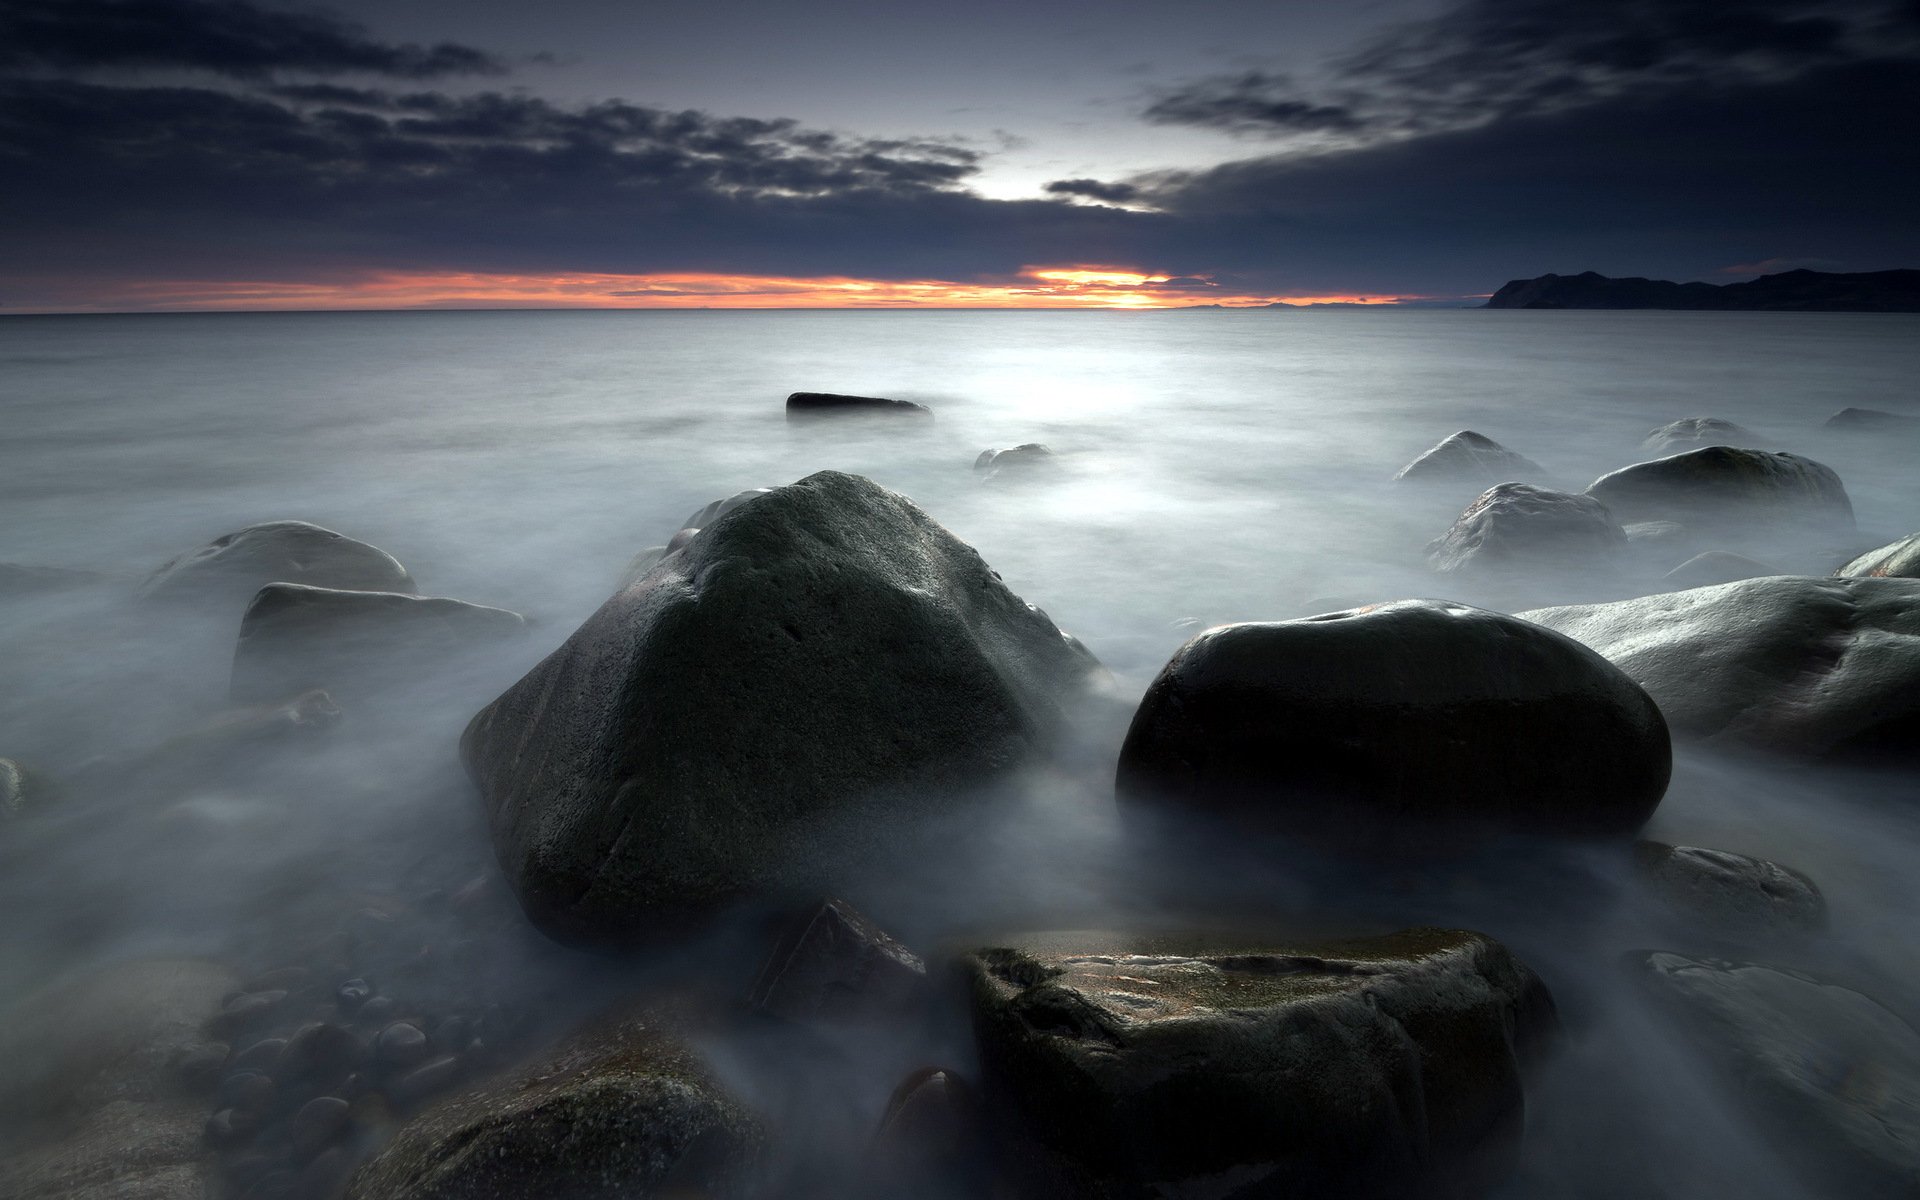 Night stone. Ночное море. Ночь море камни. Туманное море. Каменный берег в тумане.